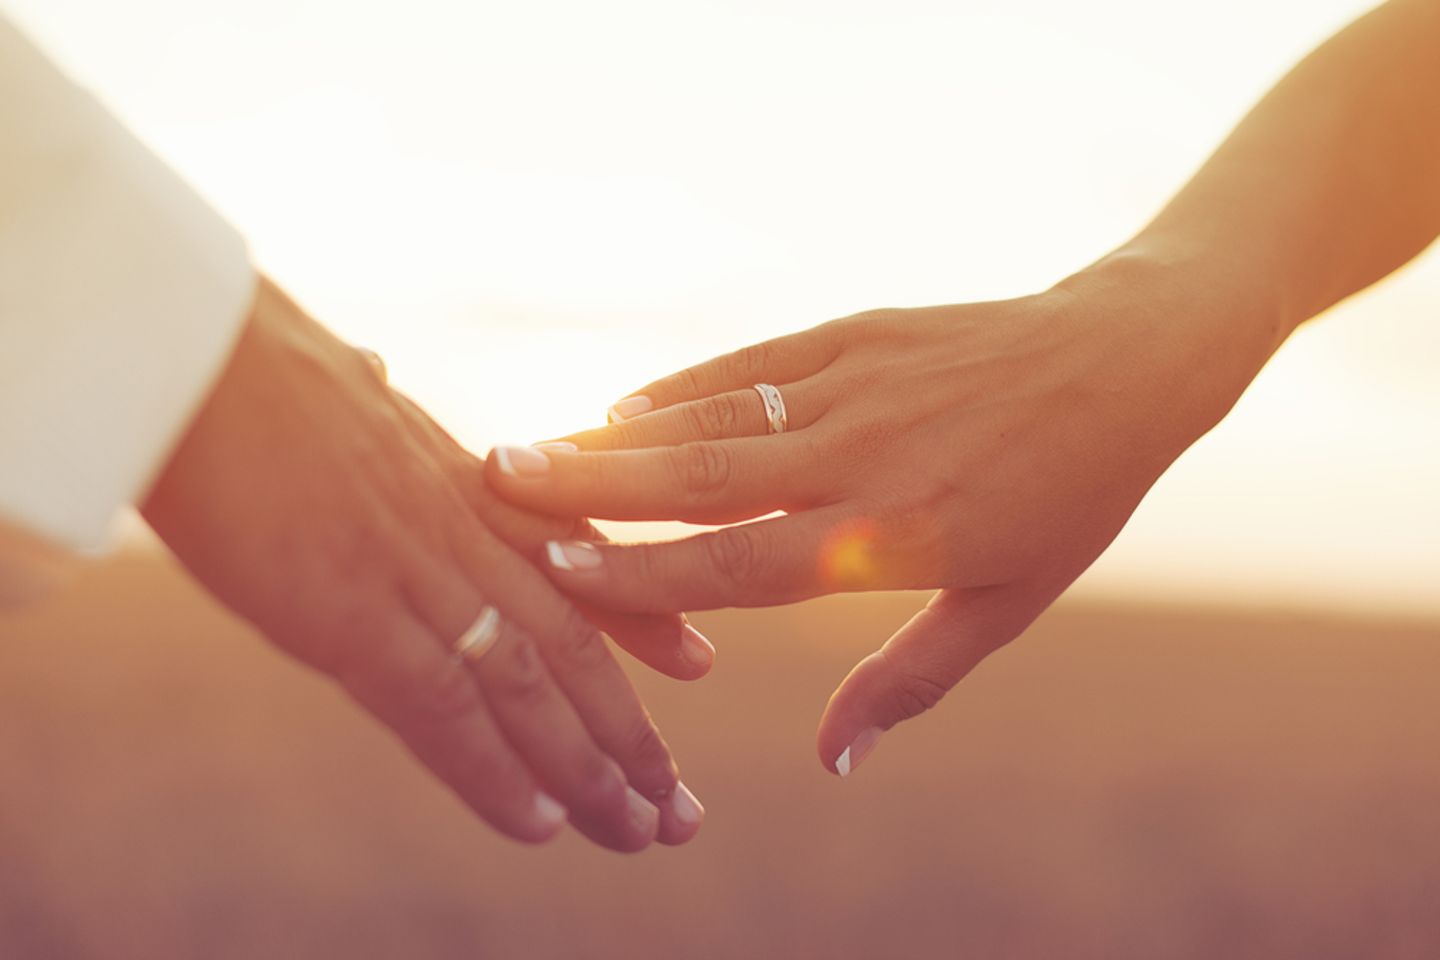 15. Hochzeitstag: Bedeutung, Bräuche und Sprüche: Zwei Hände berühren sich